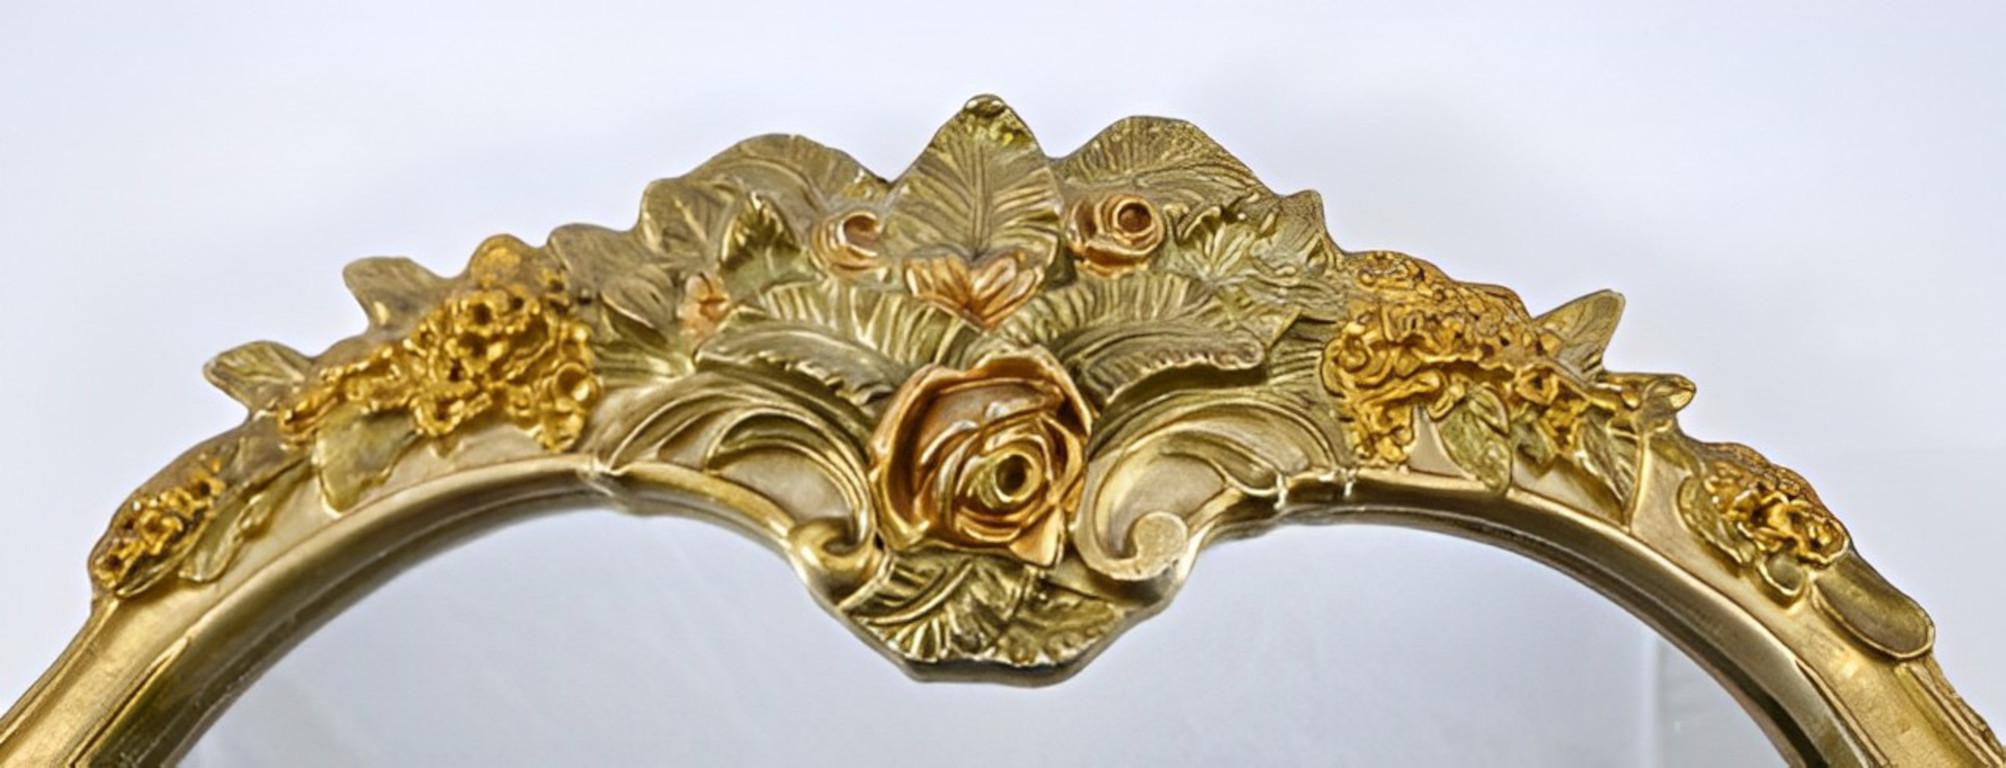 Miroir de table original et lourd d'Atsonea, présentant un décor de style rococo dans des tons d'or avec des fleurs, des feuilles et des guirlandes. Il est doté d'un support texturé. Il y a un bras d'appui décoratif pliant. Ce magnifique miroir est